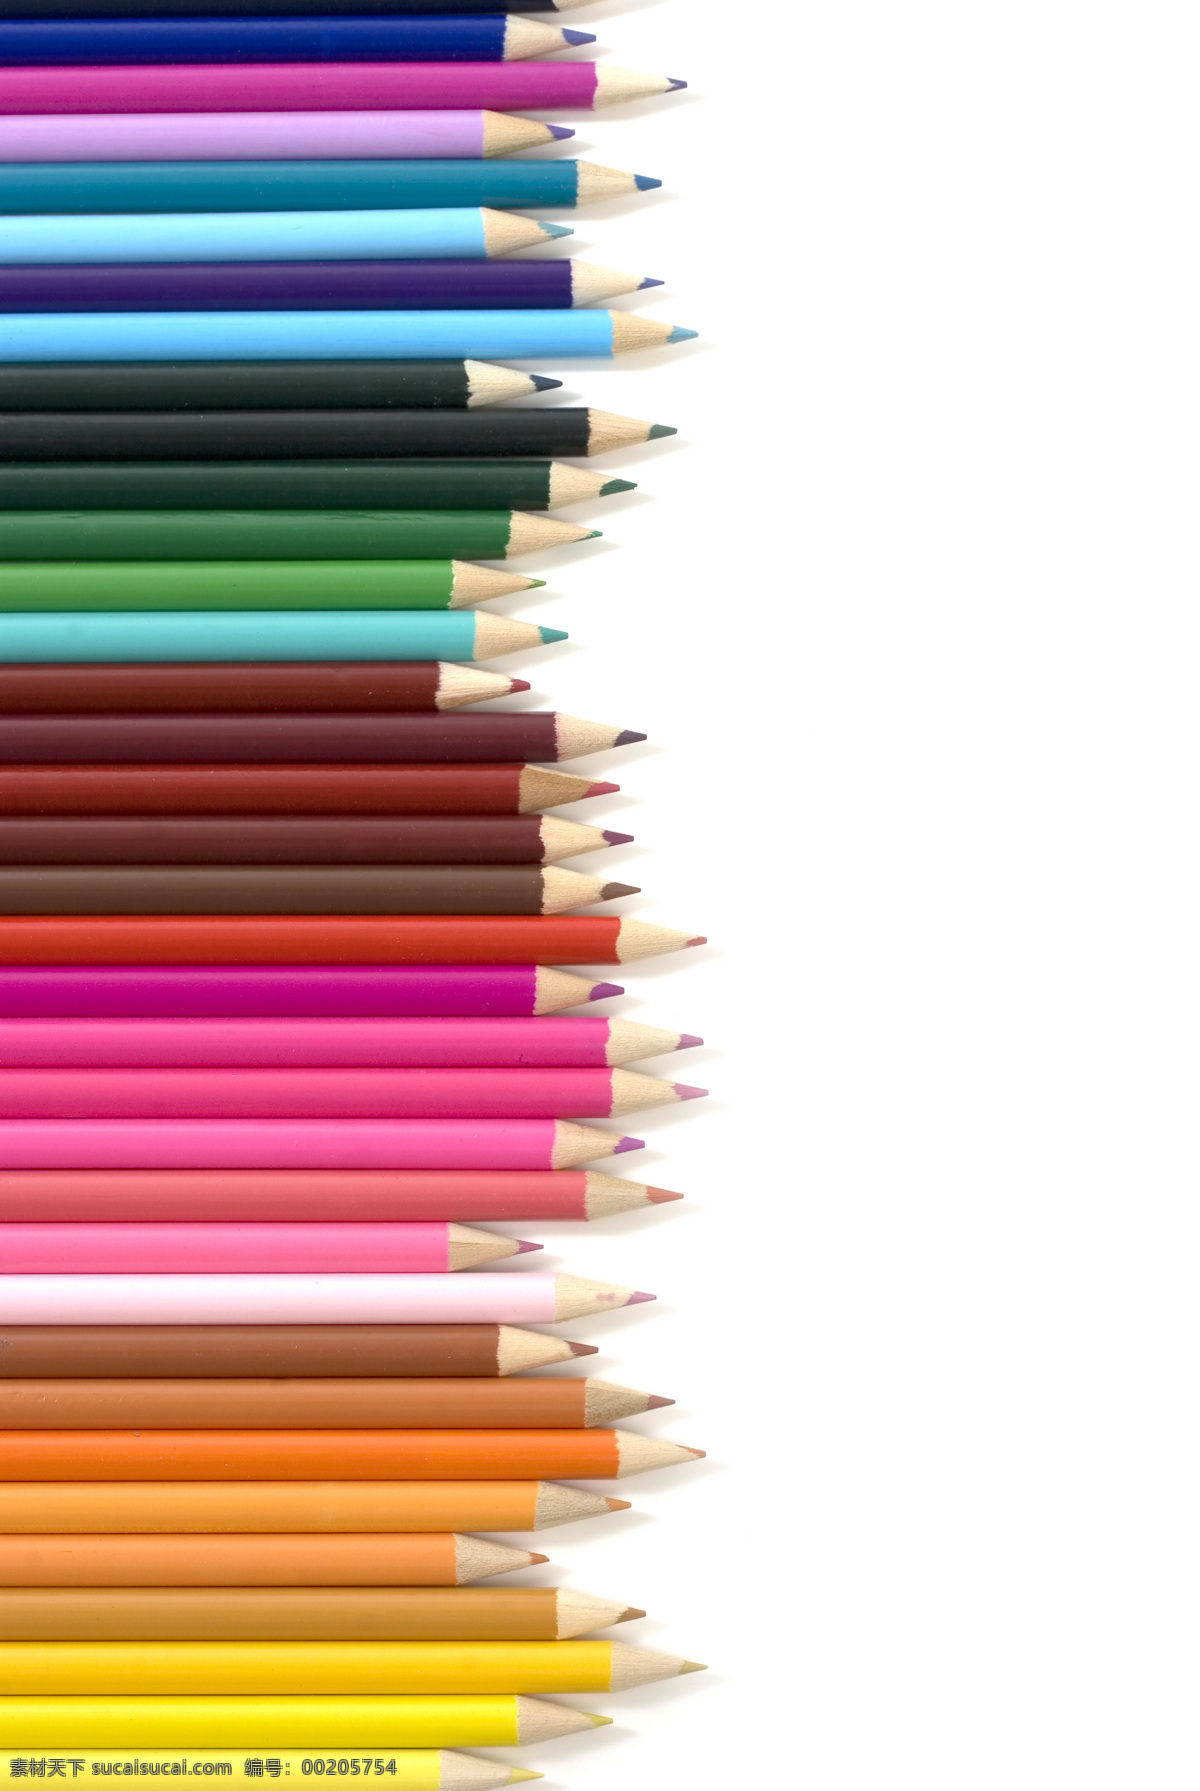 彩色 铅笔 彩色铅笔 蜡笔 文具 底纹边框 办公学习 生活百科